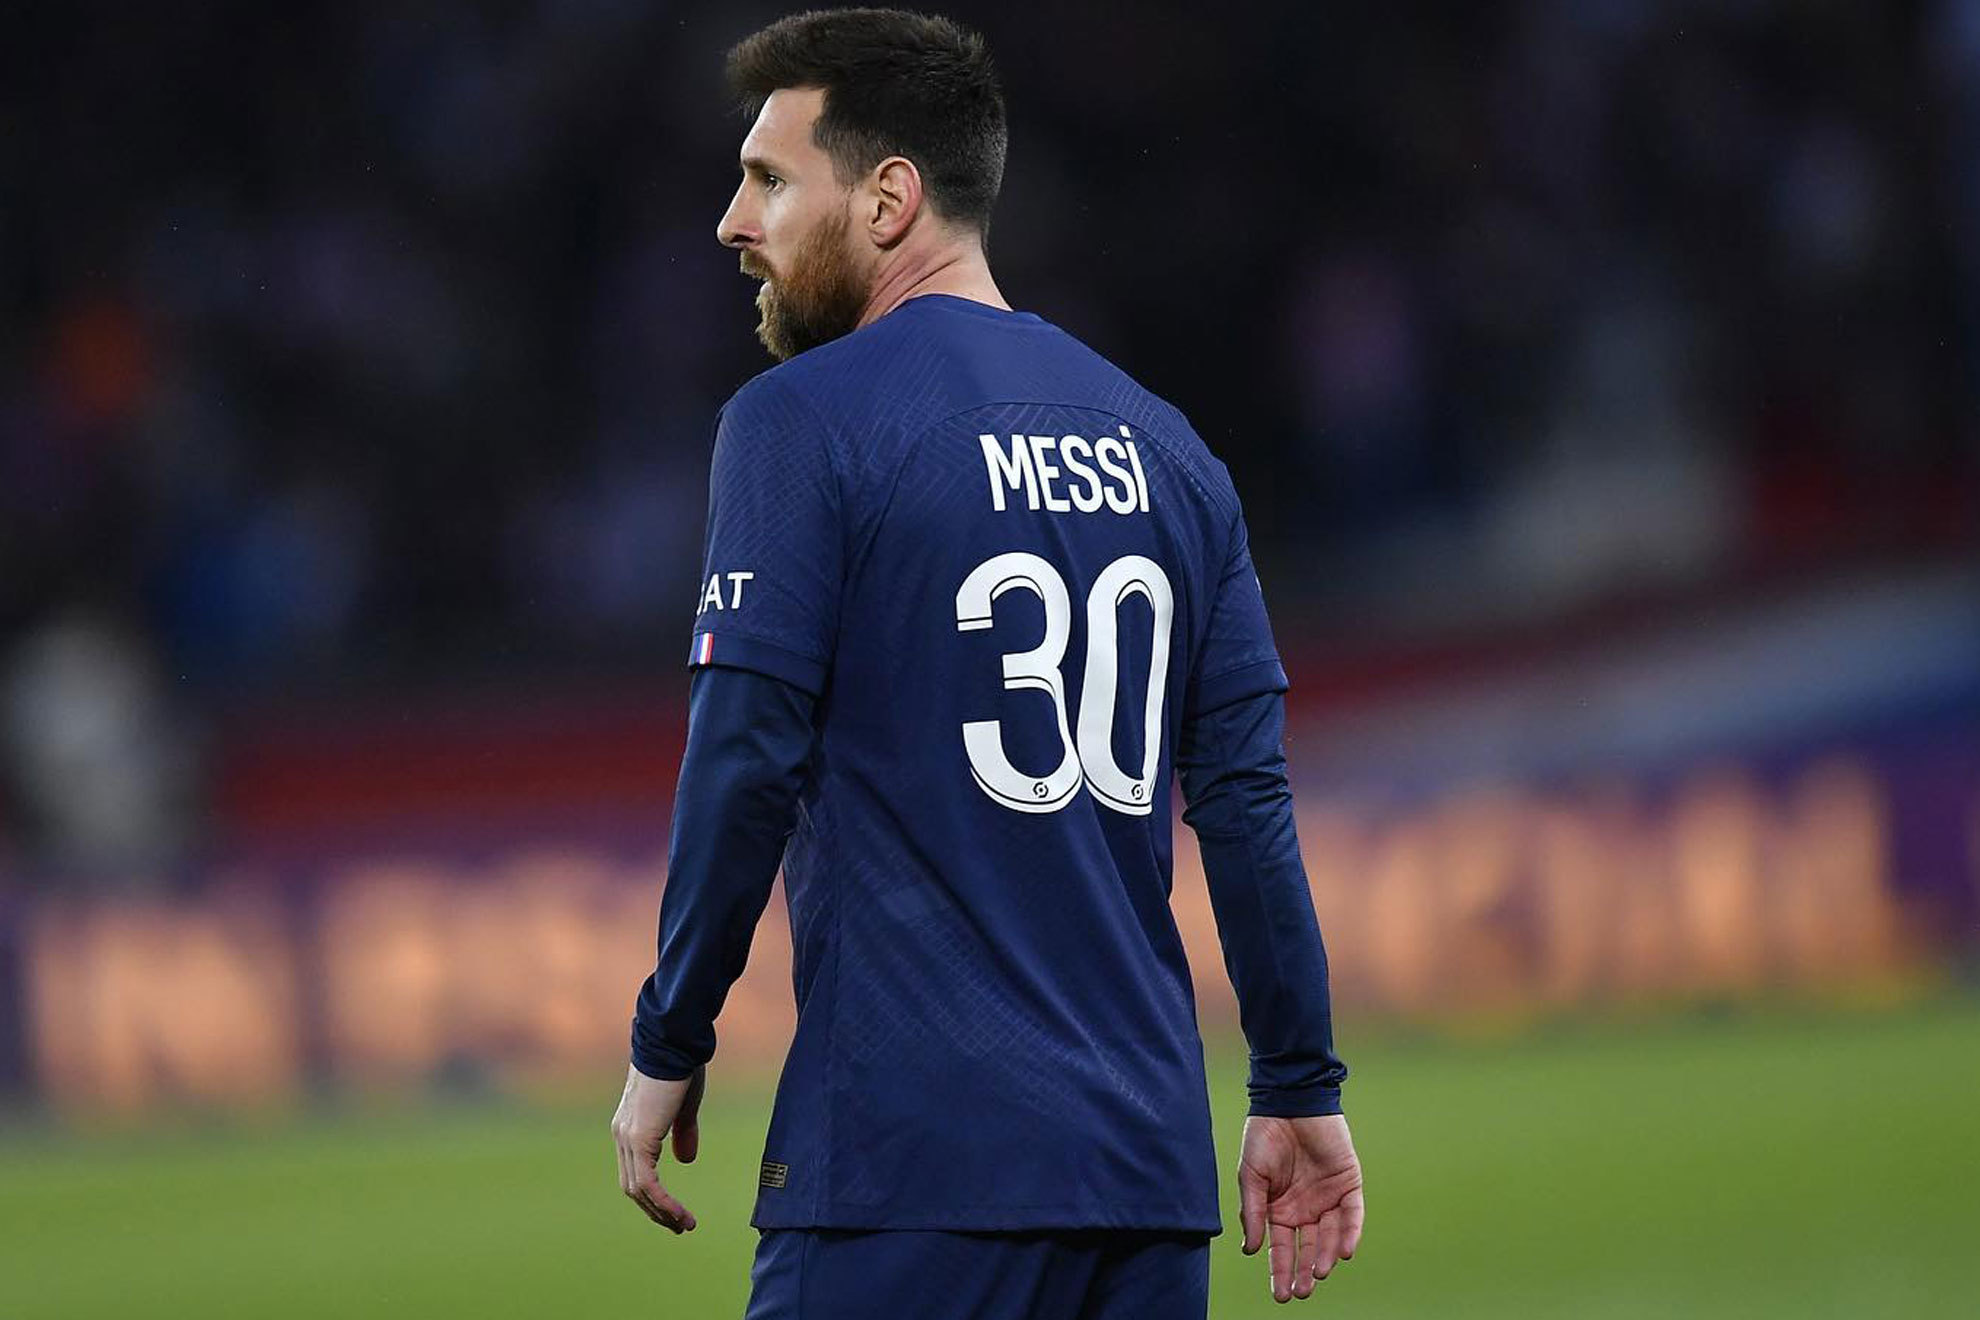 Messi y su salida del PSG: "La gente empezó a tratarme diferente"